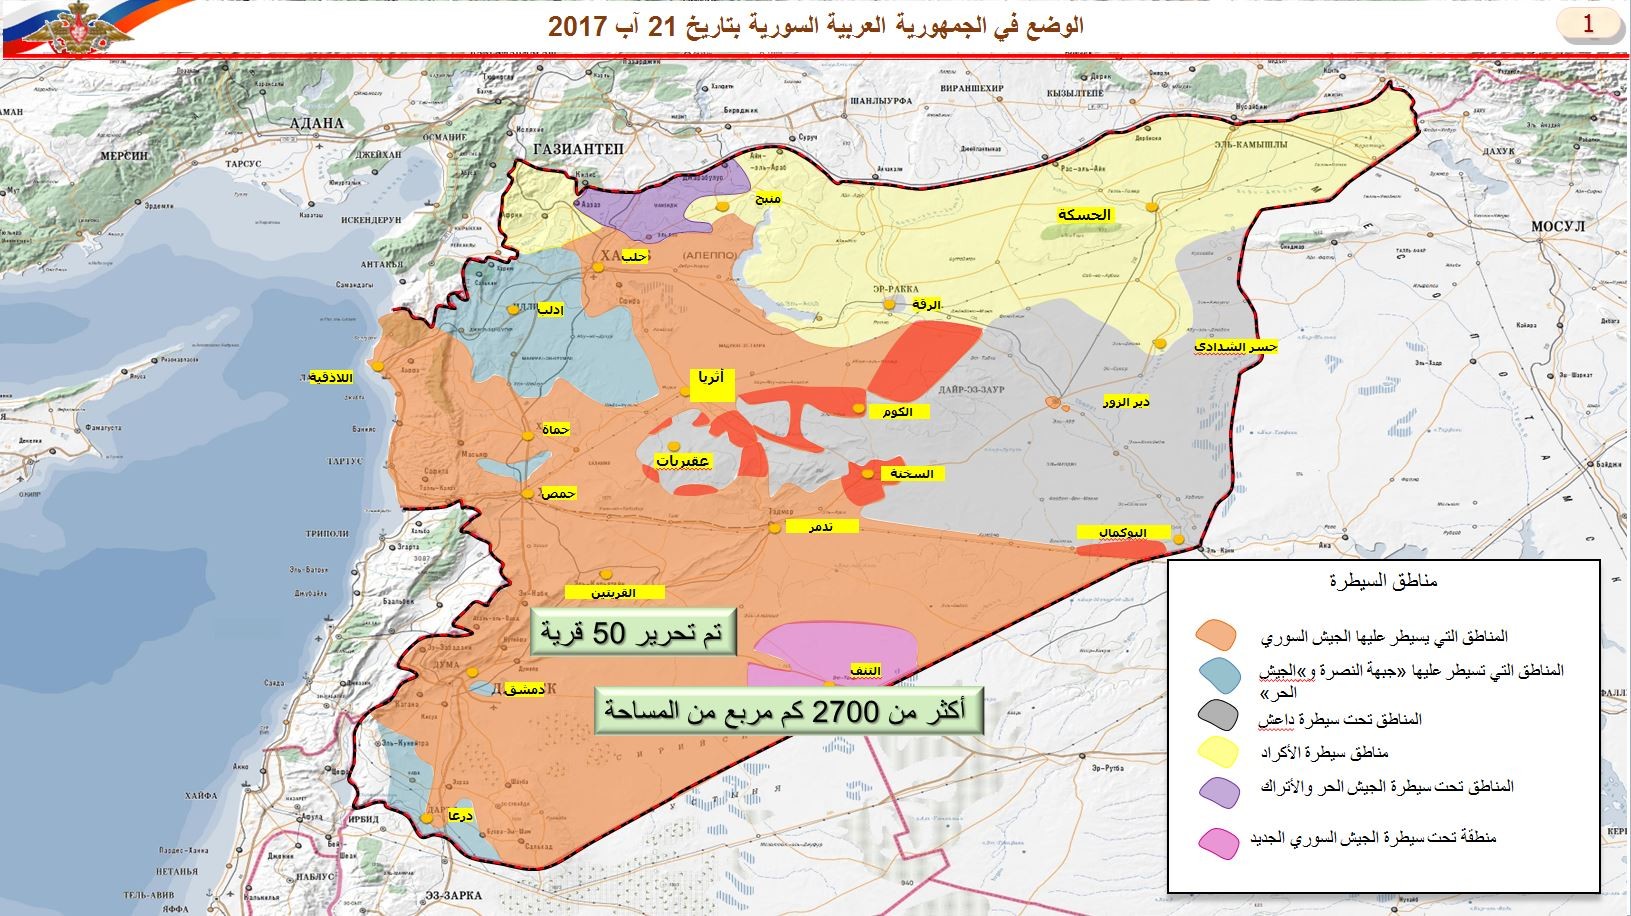 شاهد: خرائط روسية لمناطق خفض التوتر وتوزع القوى في سوريا